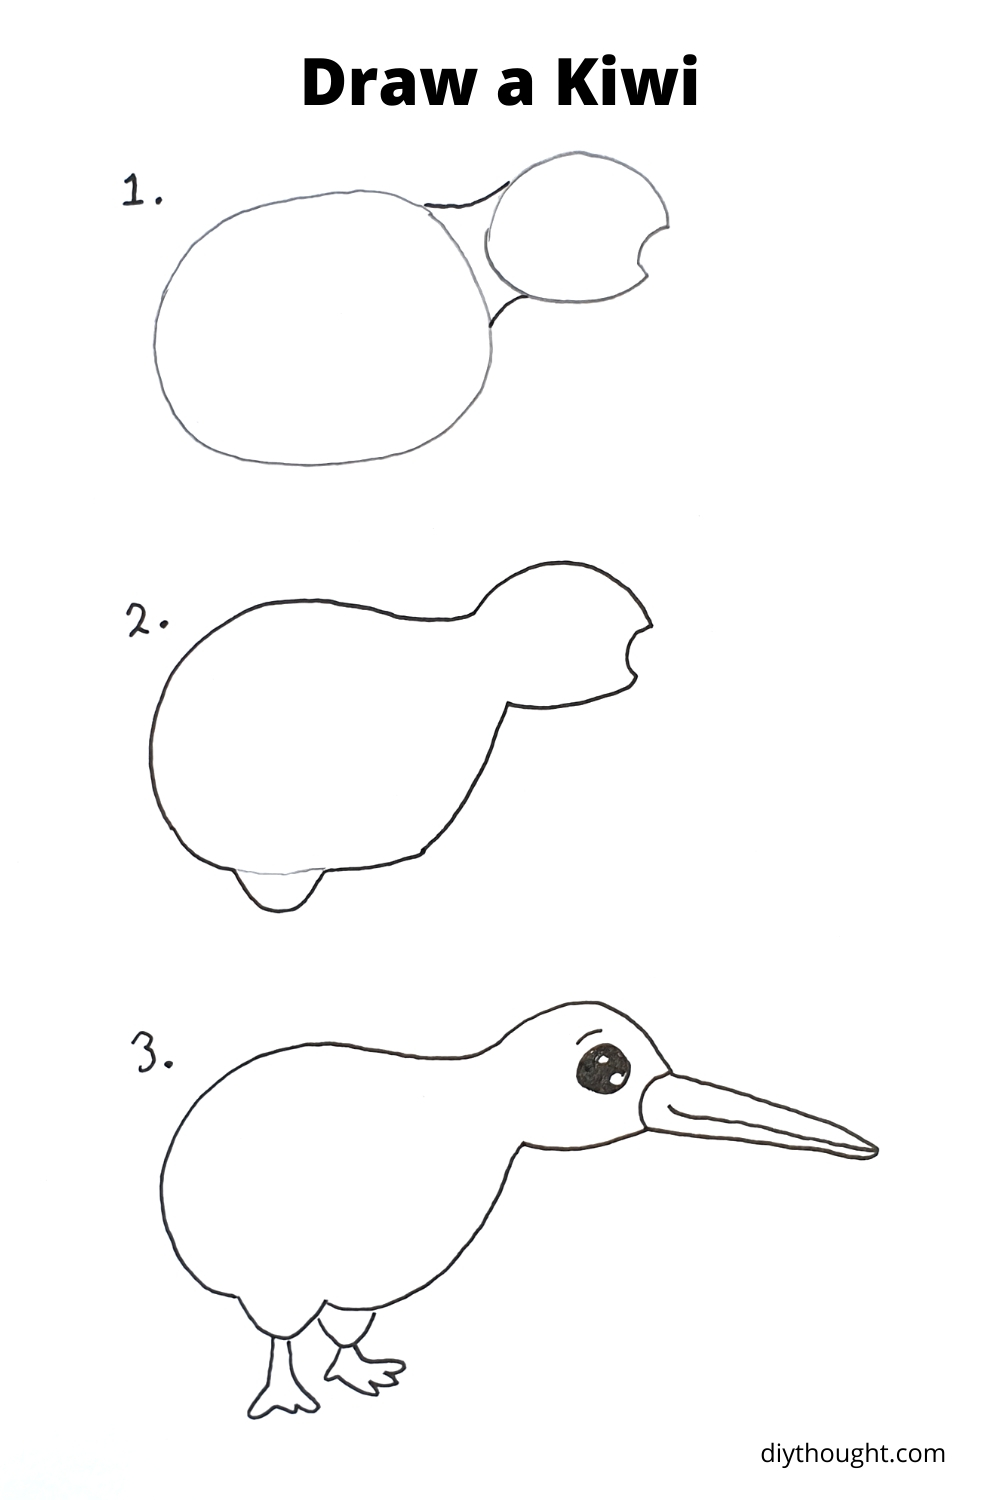 how to draw a kiwi bird